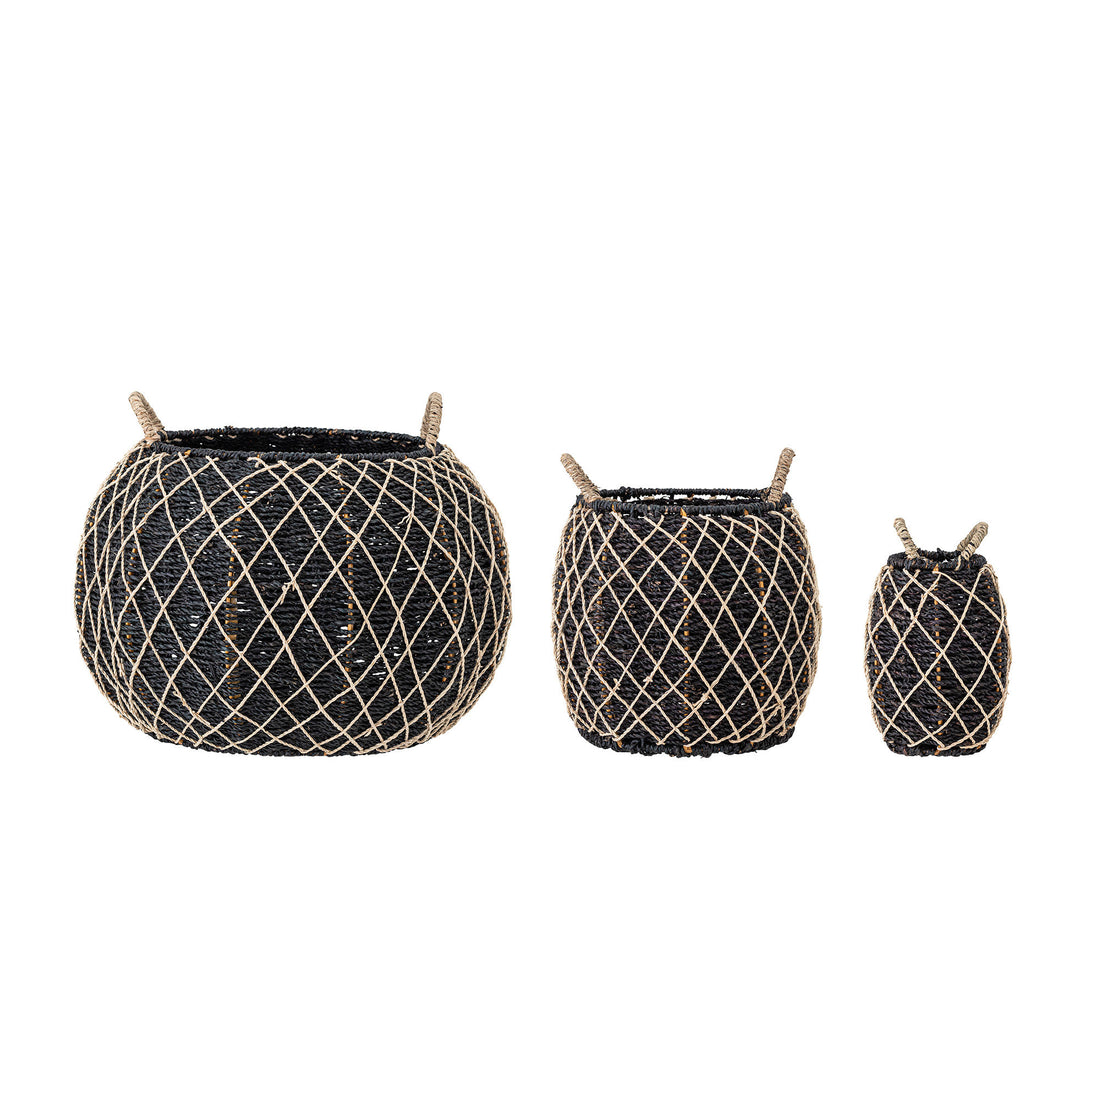 Creative Collection Karia Basket, Black, Sea grass